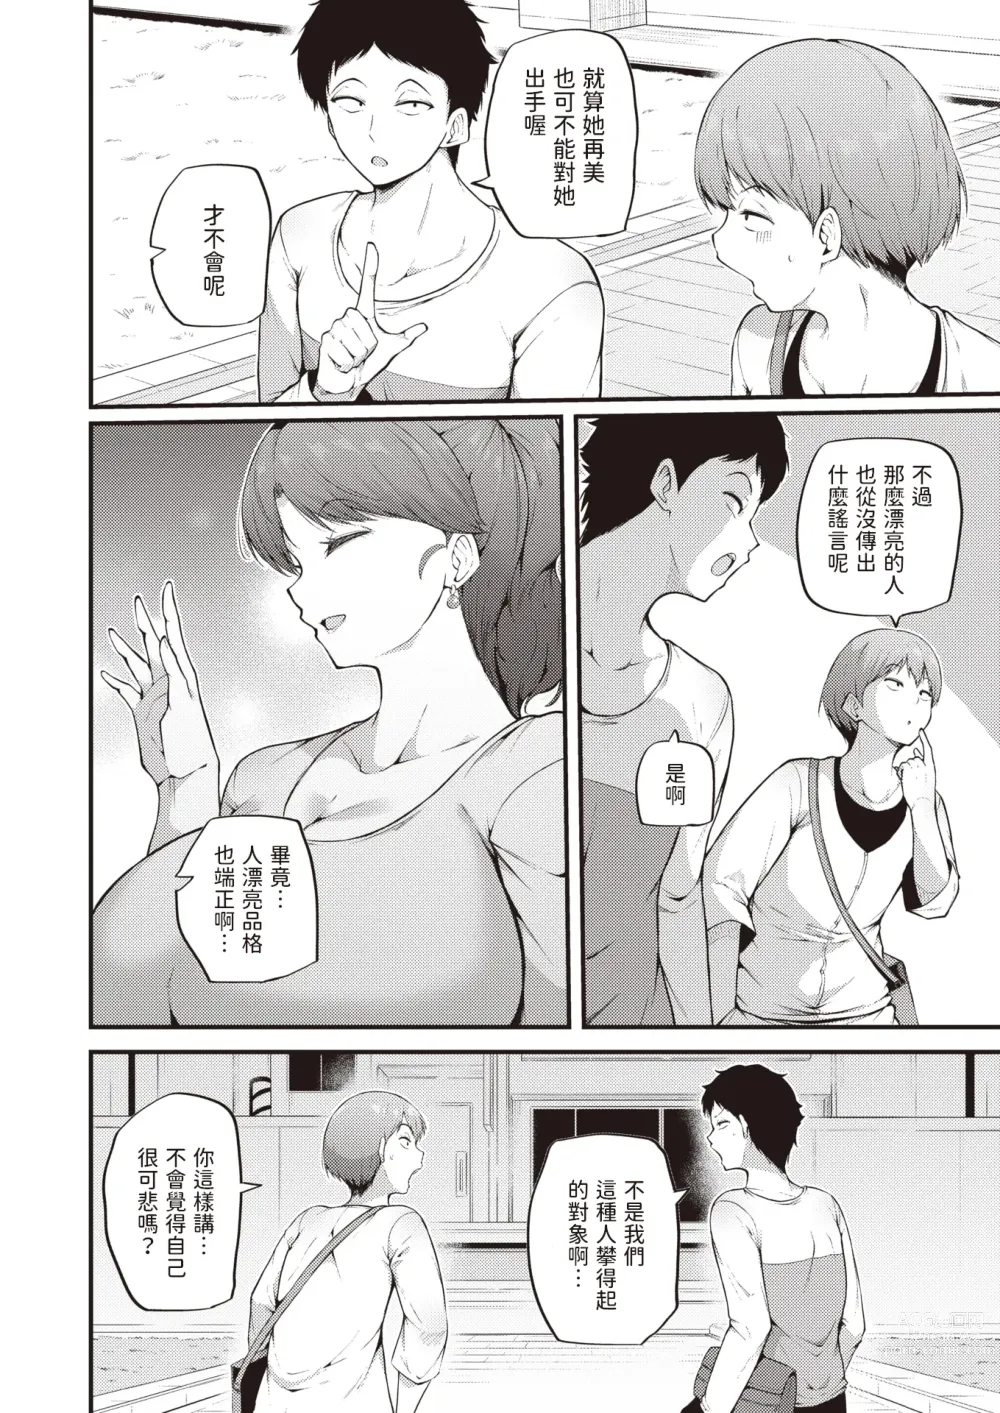 Page 2 of manga Himegoto